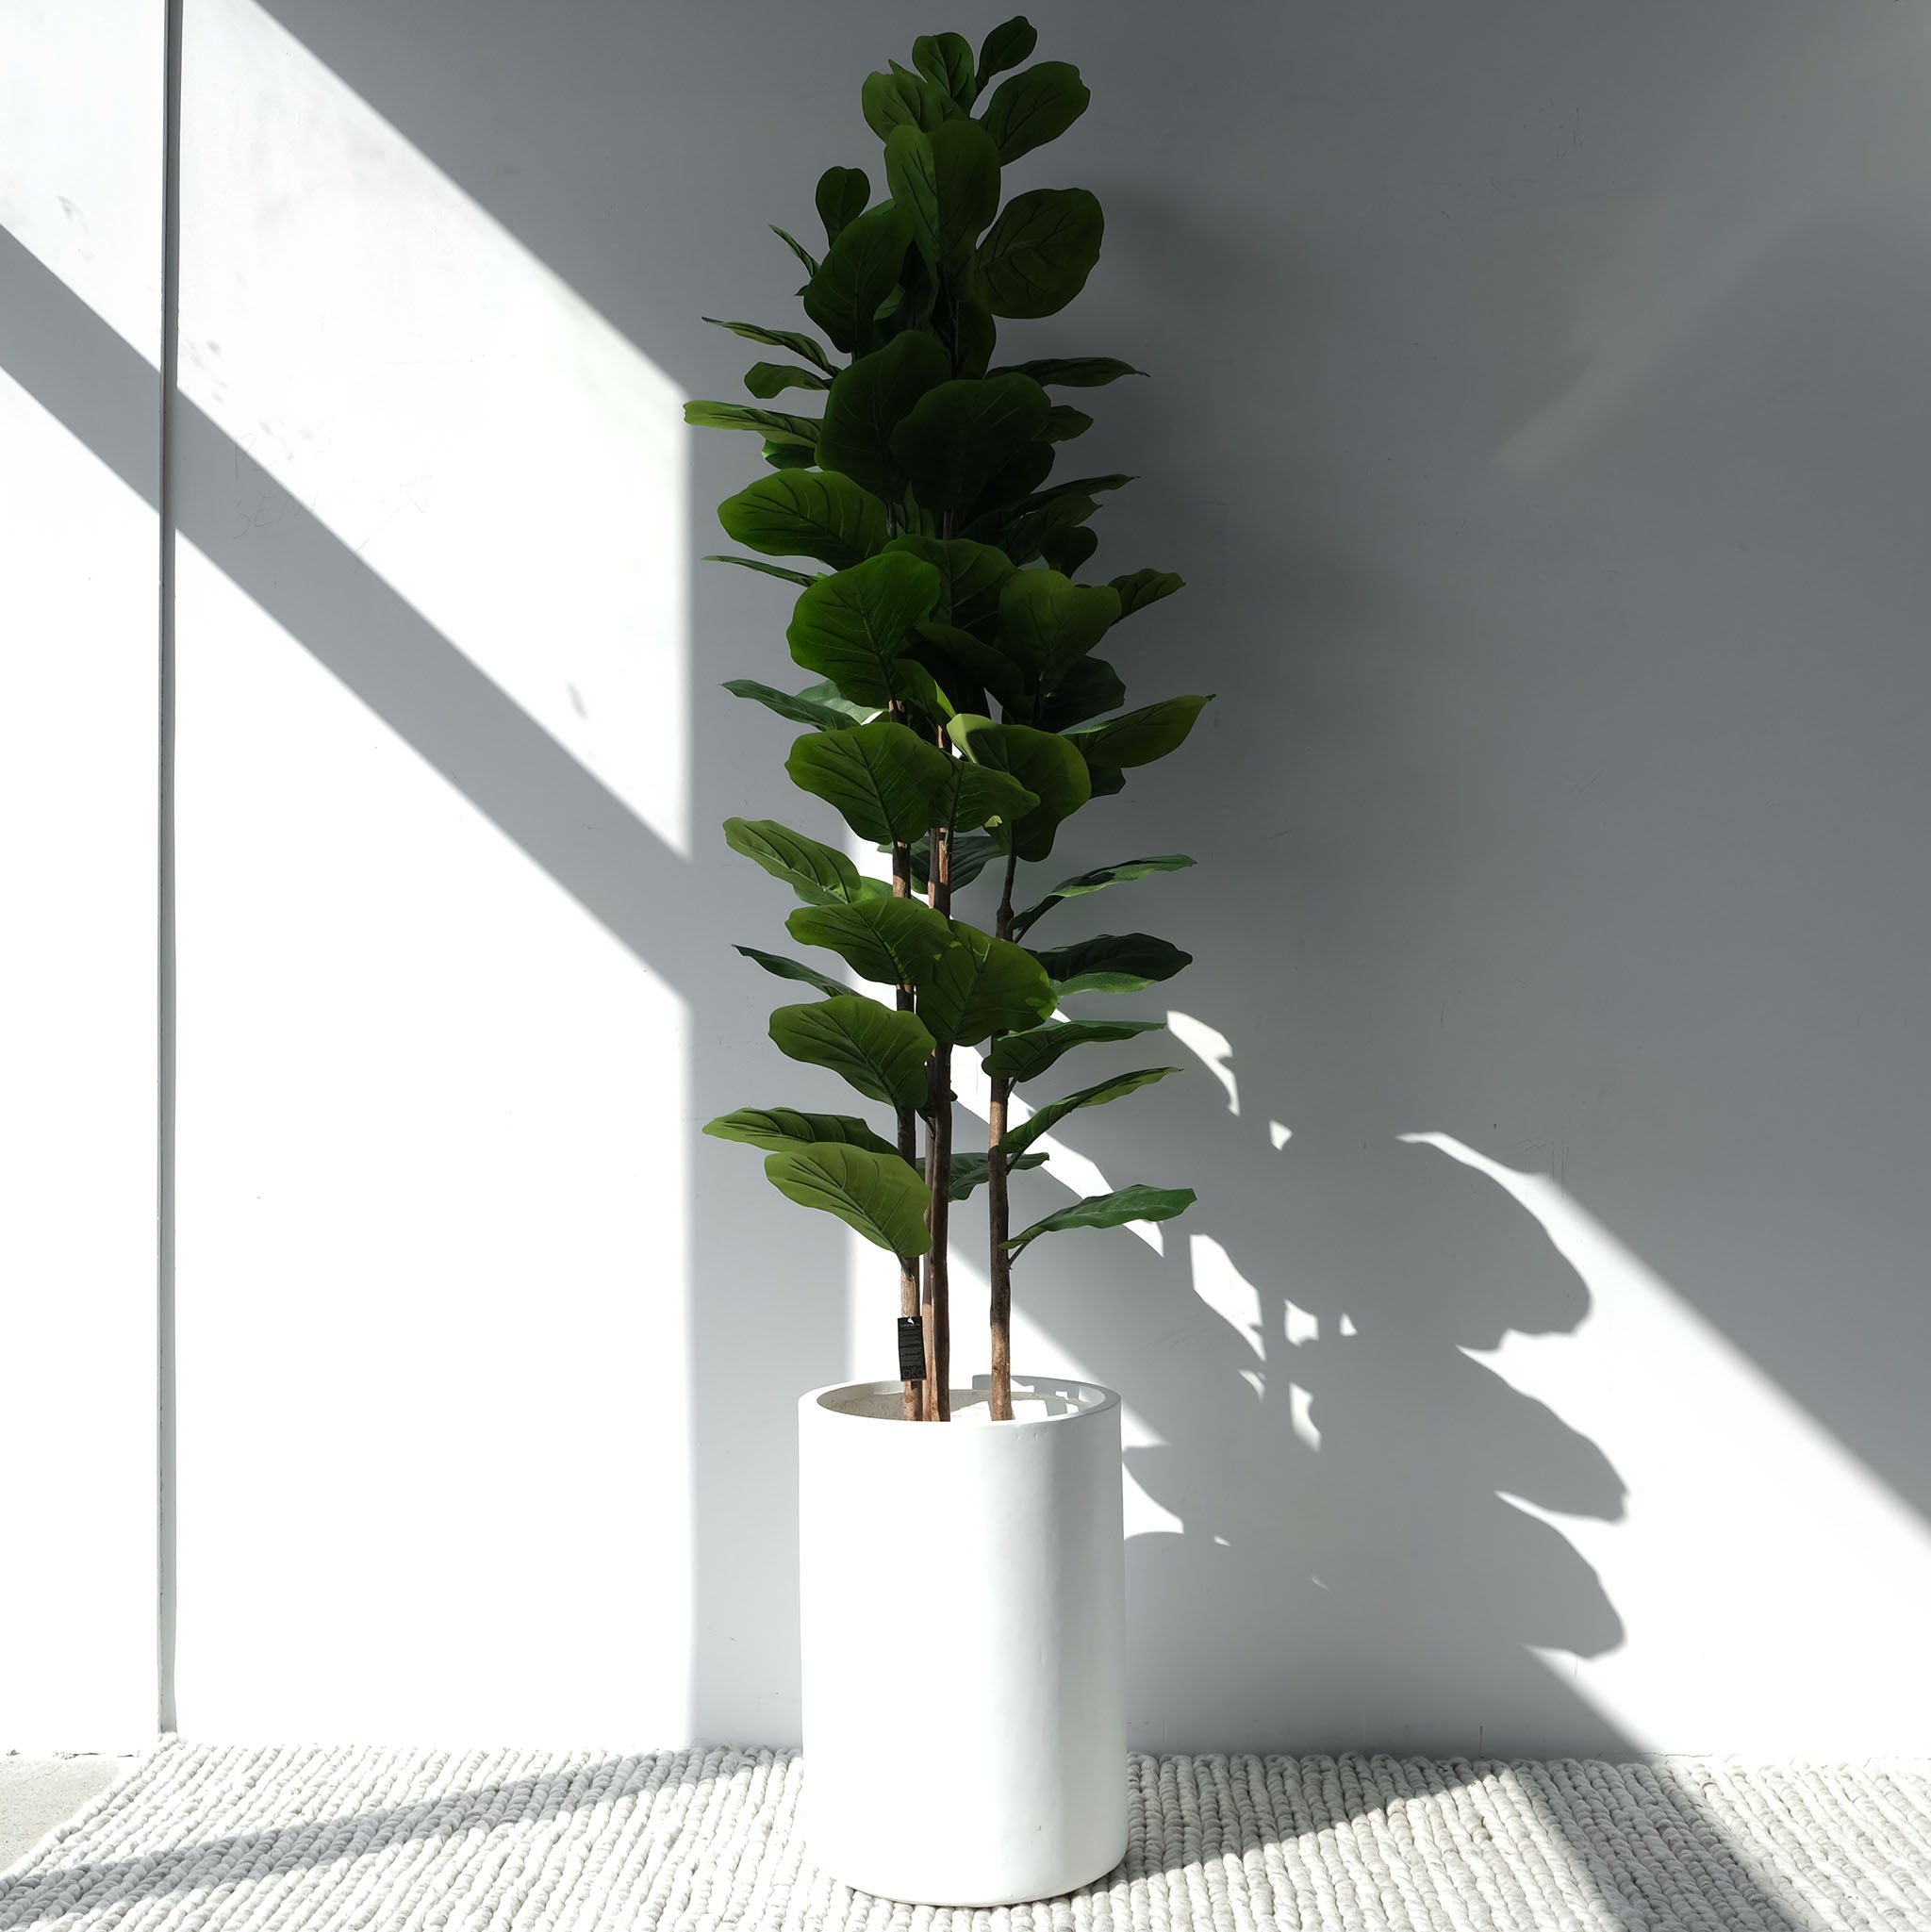 Sleek, modern indoor outdoor fiberglass planter